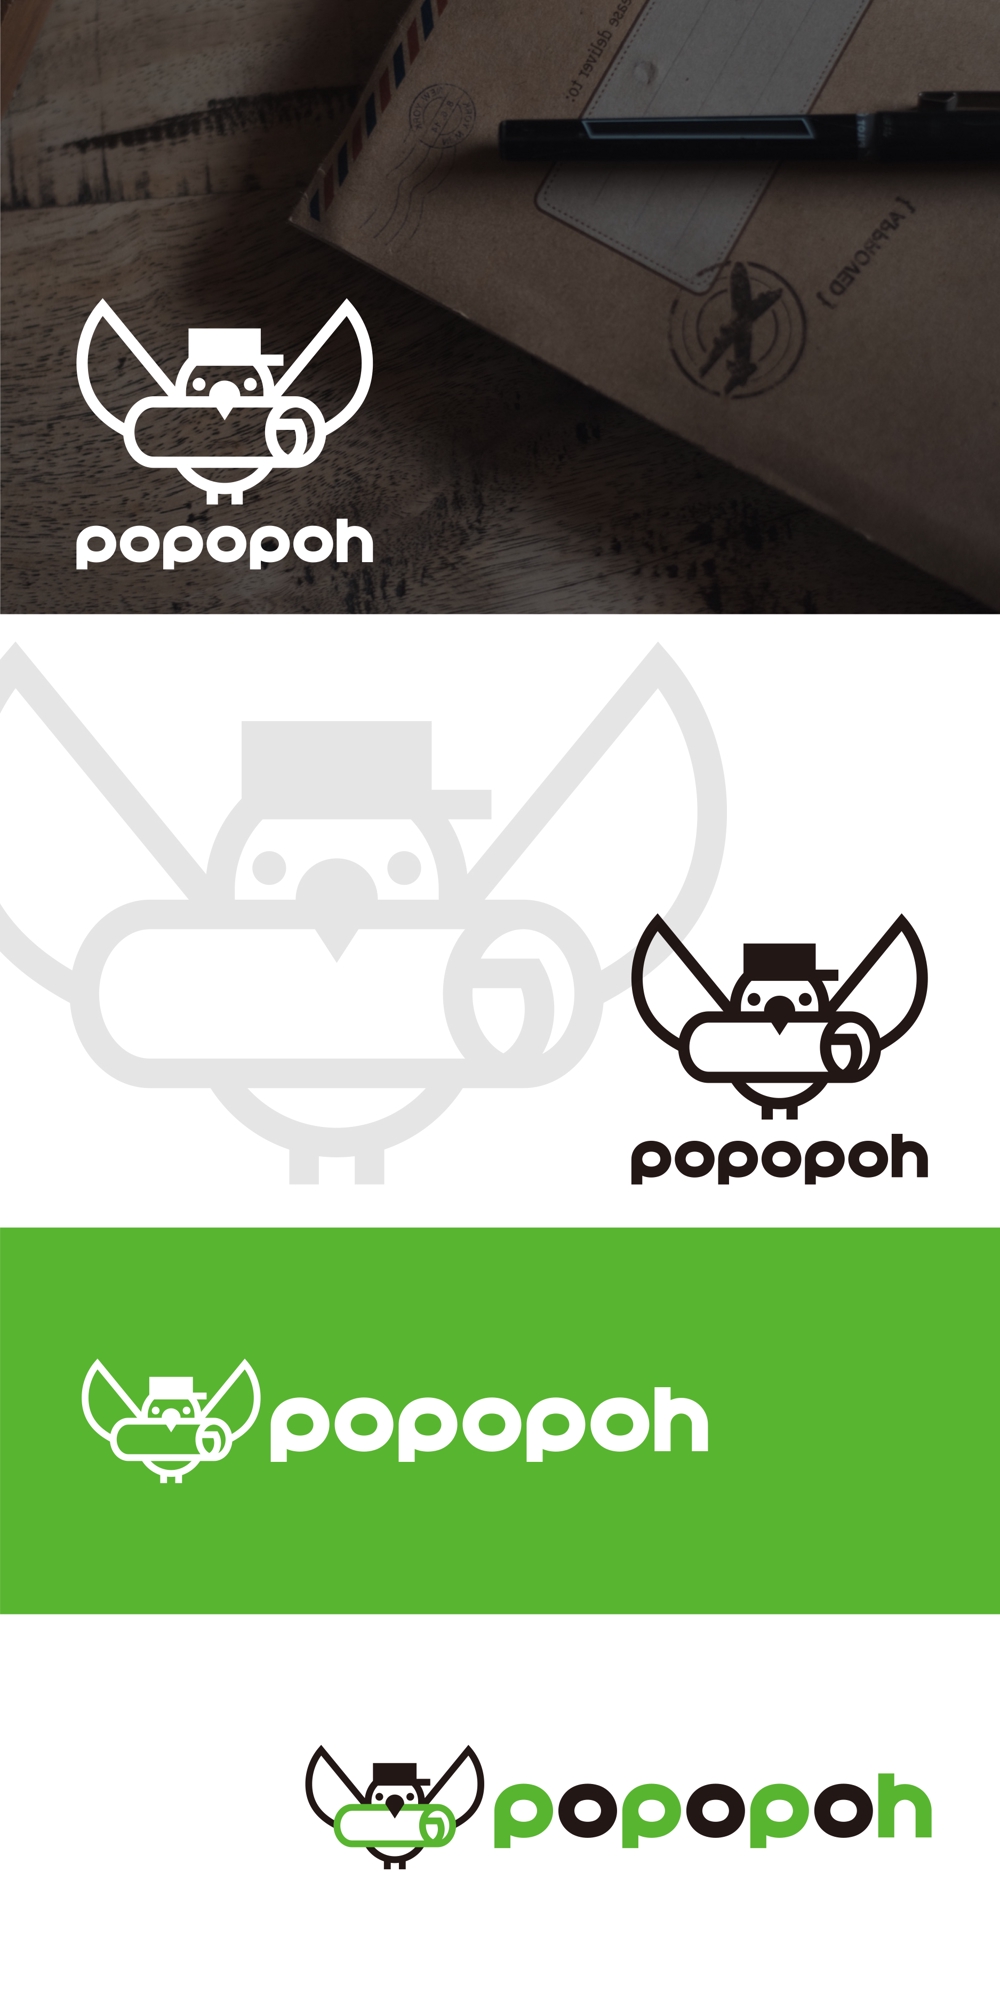 配送会社比較サイト「popopoh」のロゴ